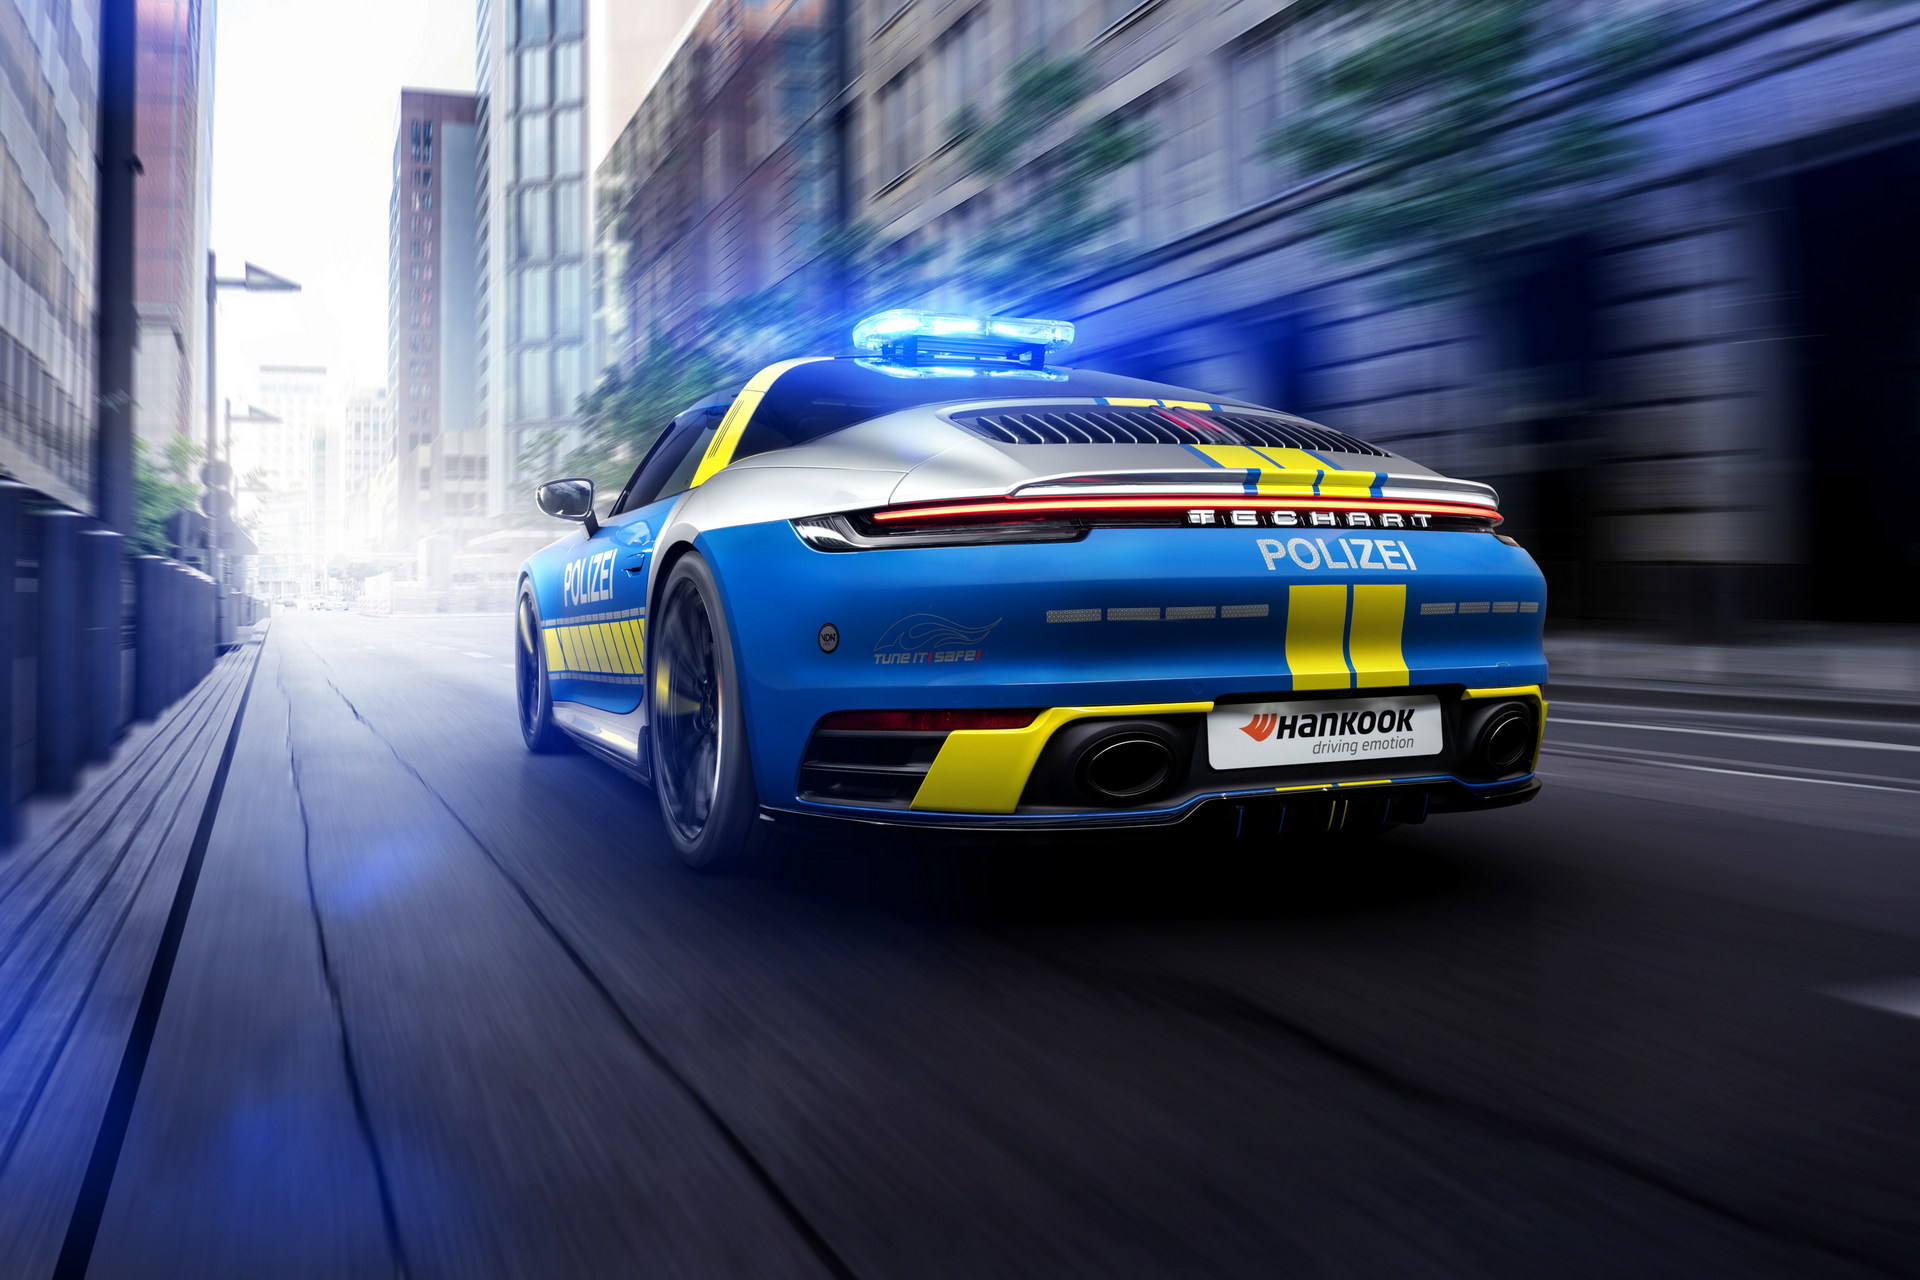 Policyjne Porsche 911 w wersji Targa? TechArt pokazuje, że to możliwe